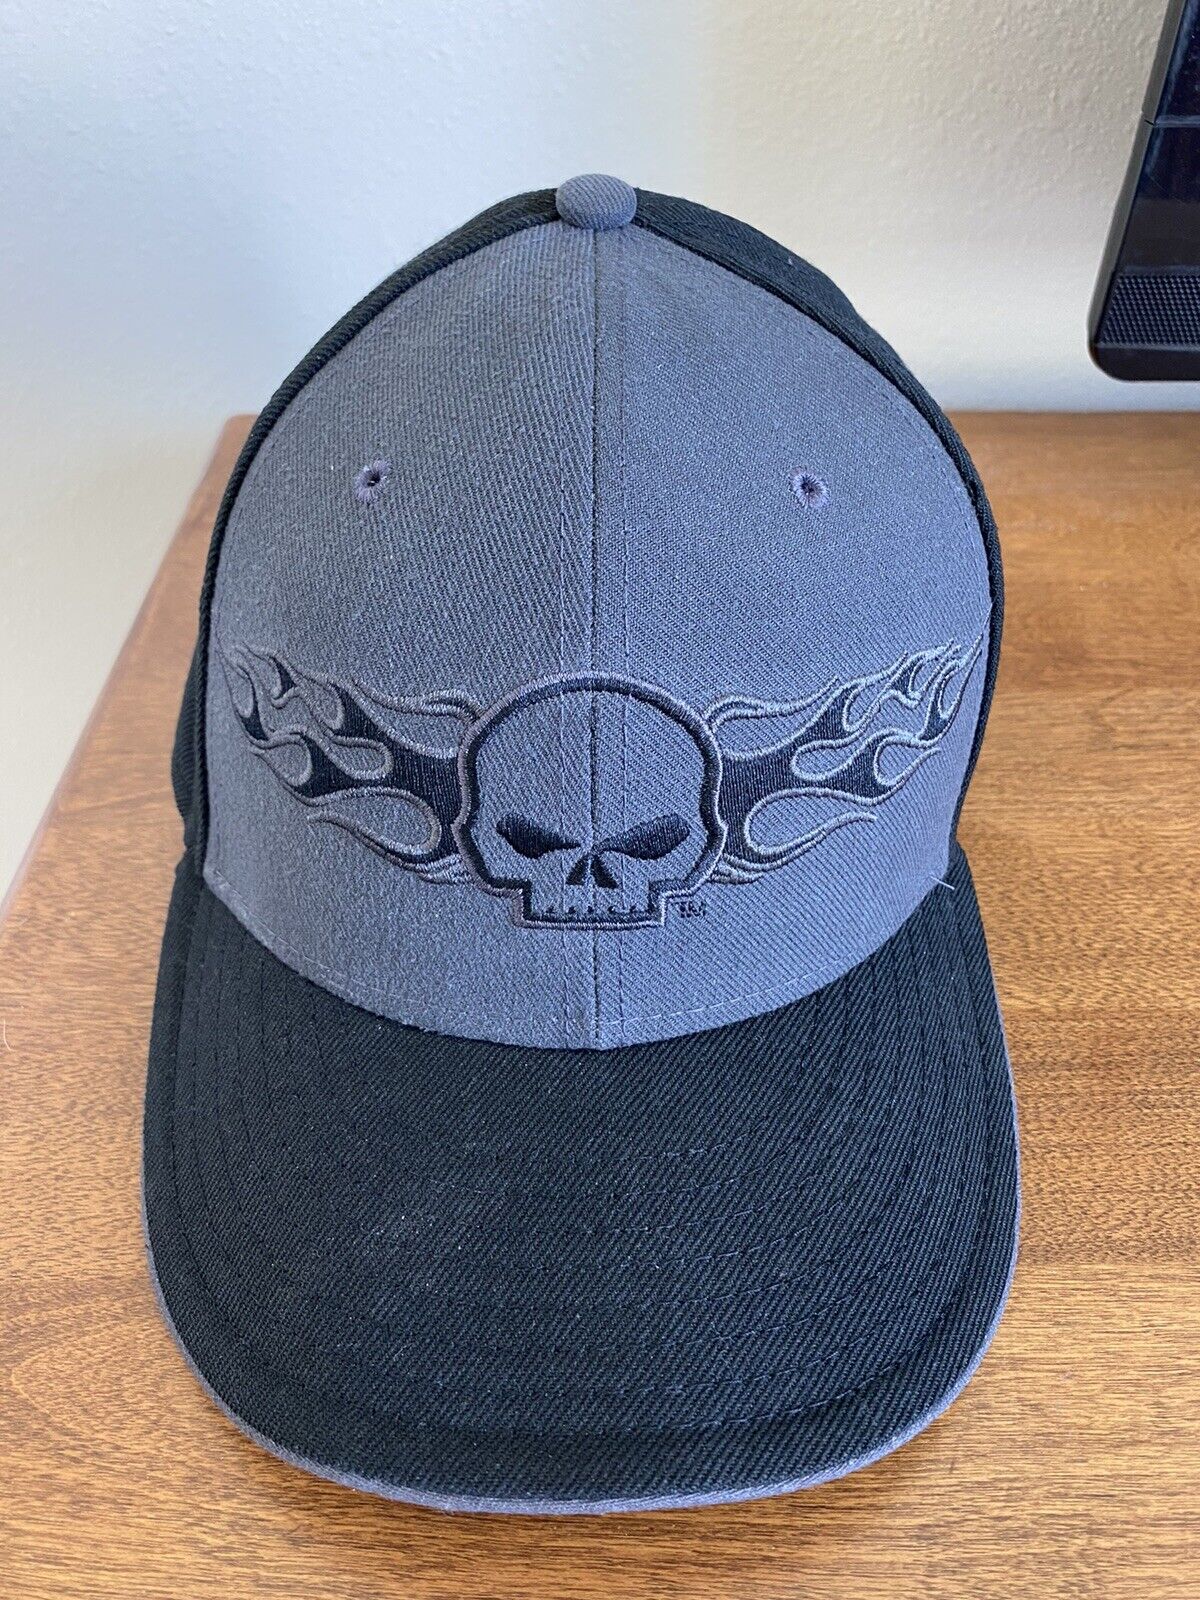 UNIQUE Harley Davidson New Era Hat Skull Size 7.5 Black 59/ Fifty ebay 1/1